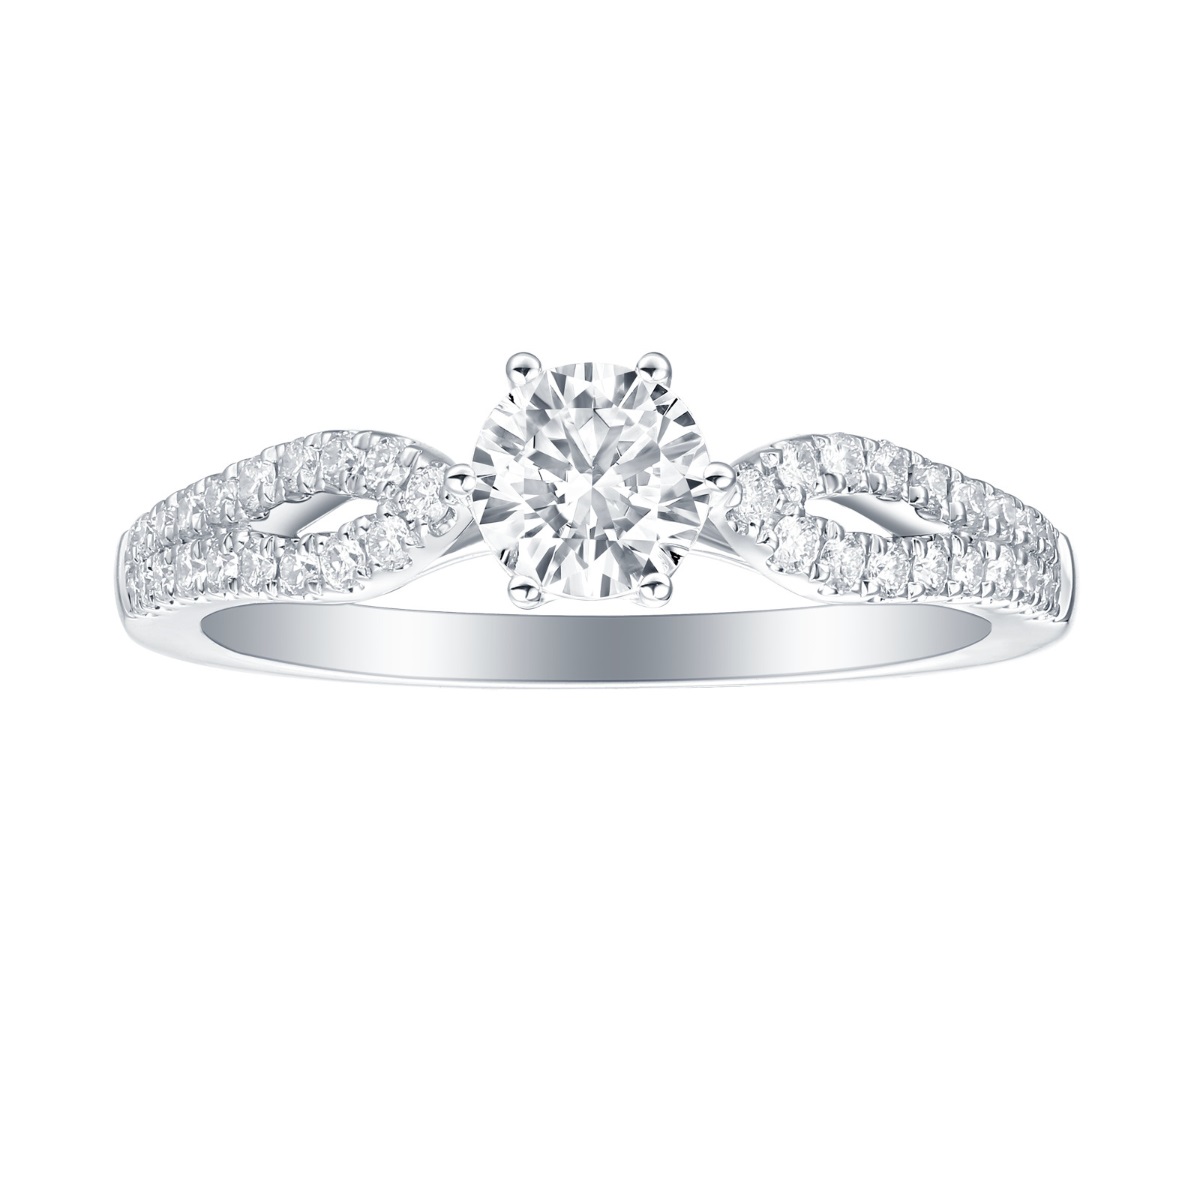 R35880WHT – 18K White Gold Diamond Ring, 1.27 TCW